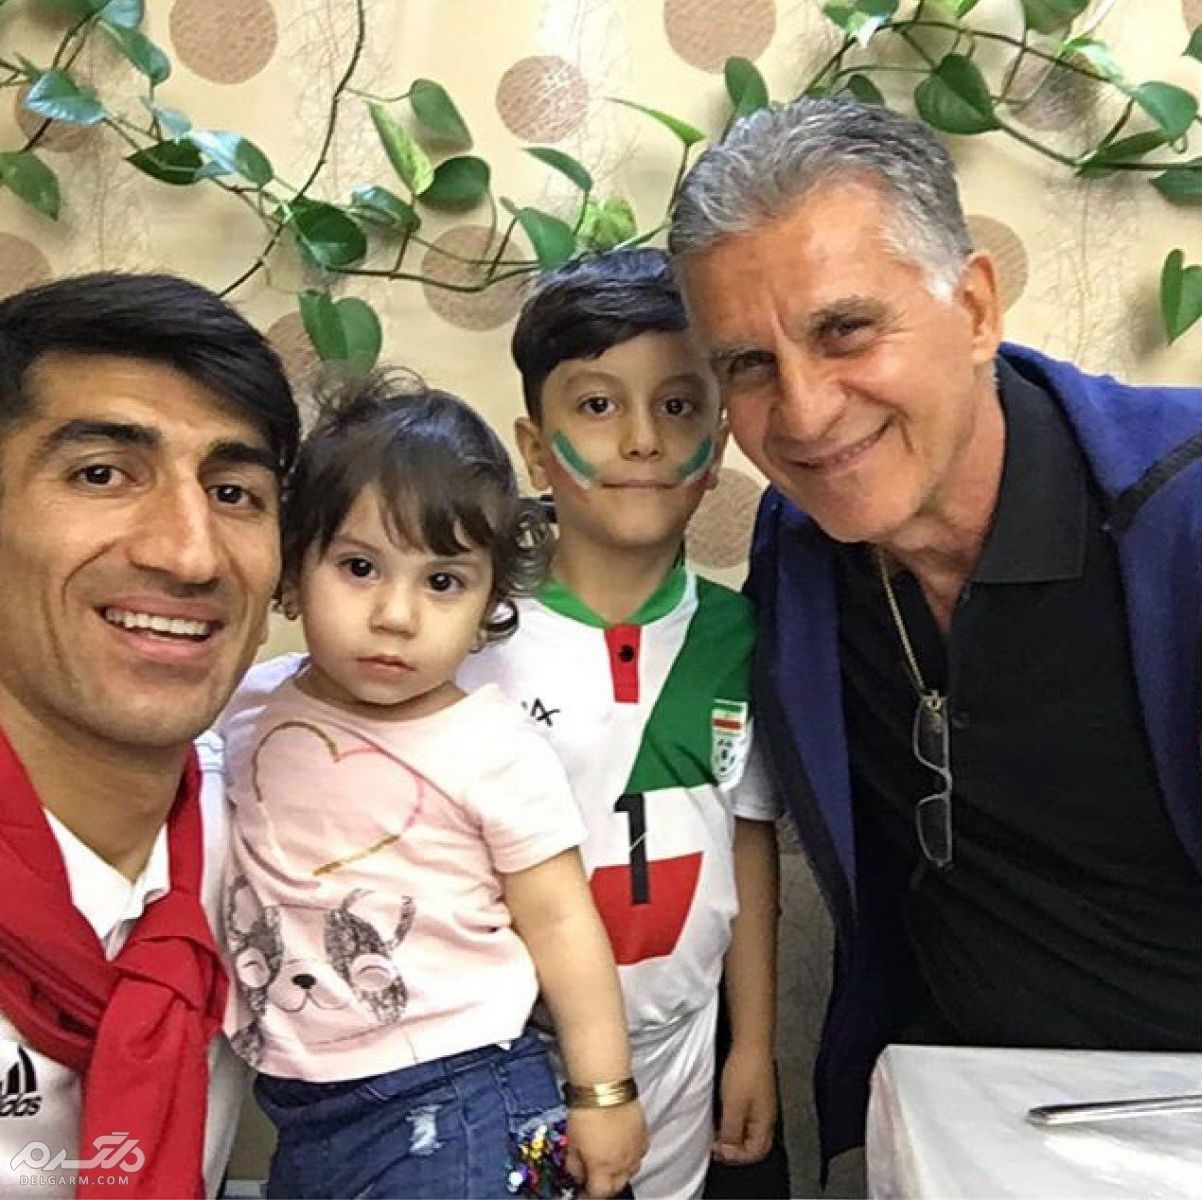 علیرضا بیرانوند بهترین دروازبان تیم ایران در جام جهانی 2018 